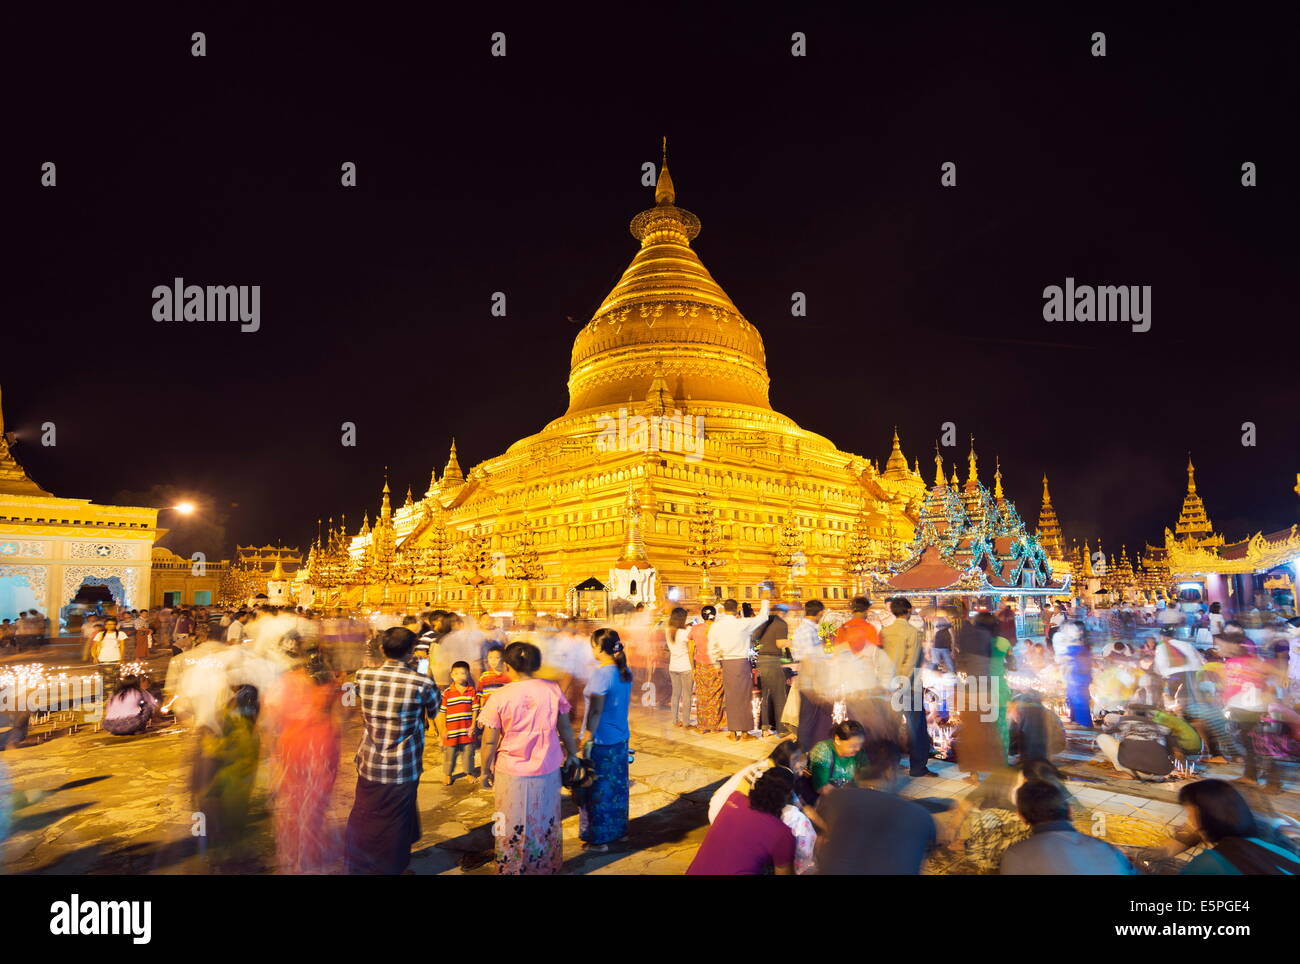 Fête de la lumière, Shwezigon Paya, Bagan (Pagan), le Myanmar (Birmanie), l'Asie Banque D'Images